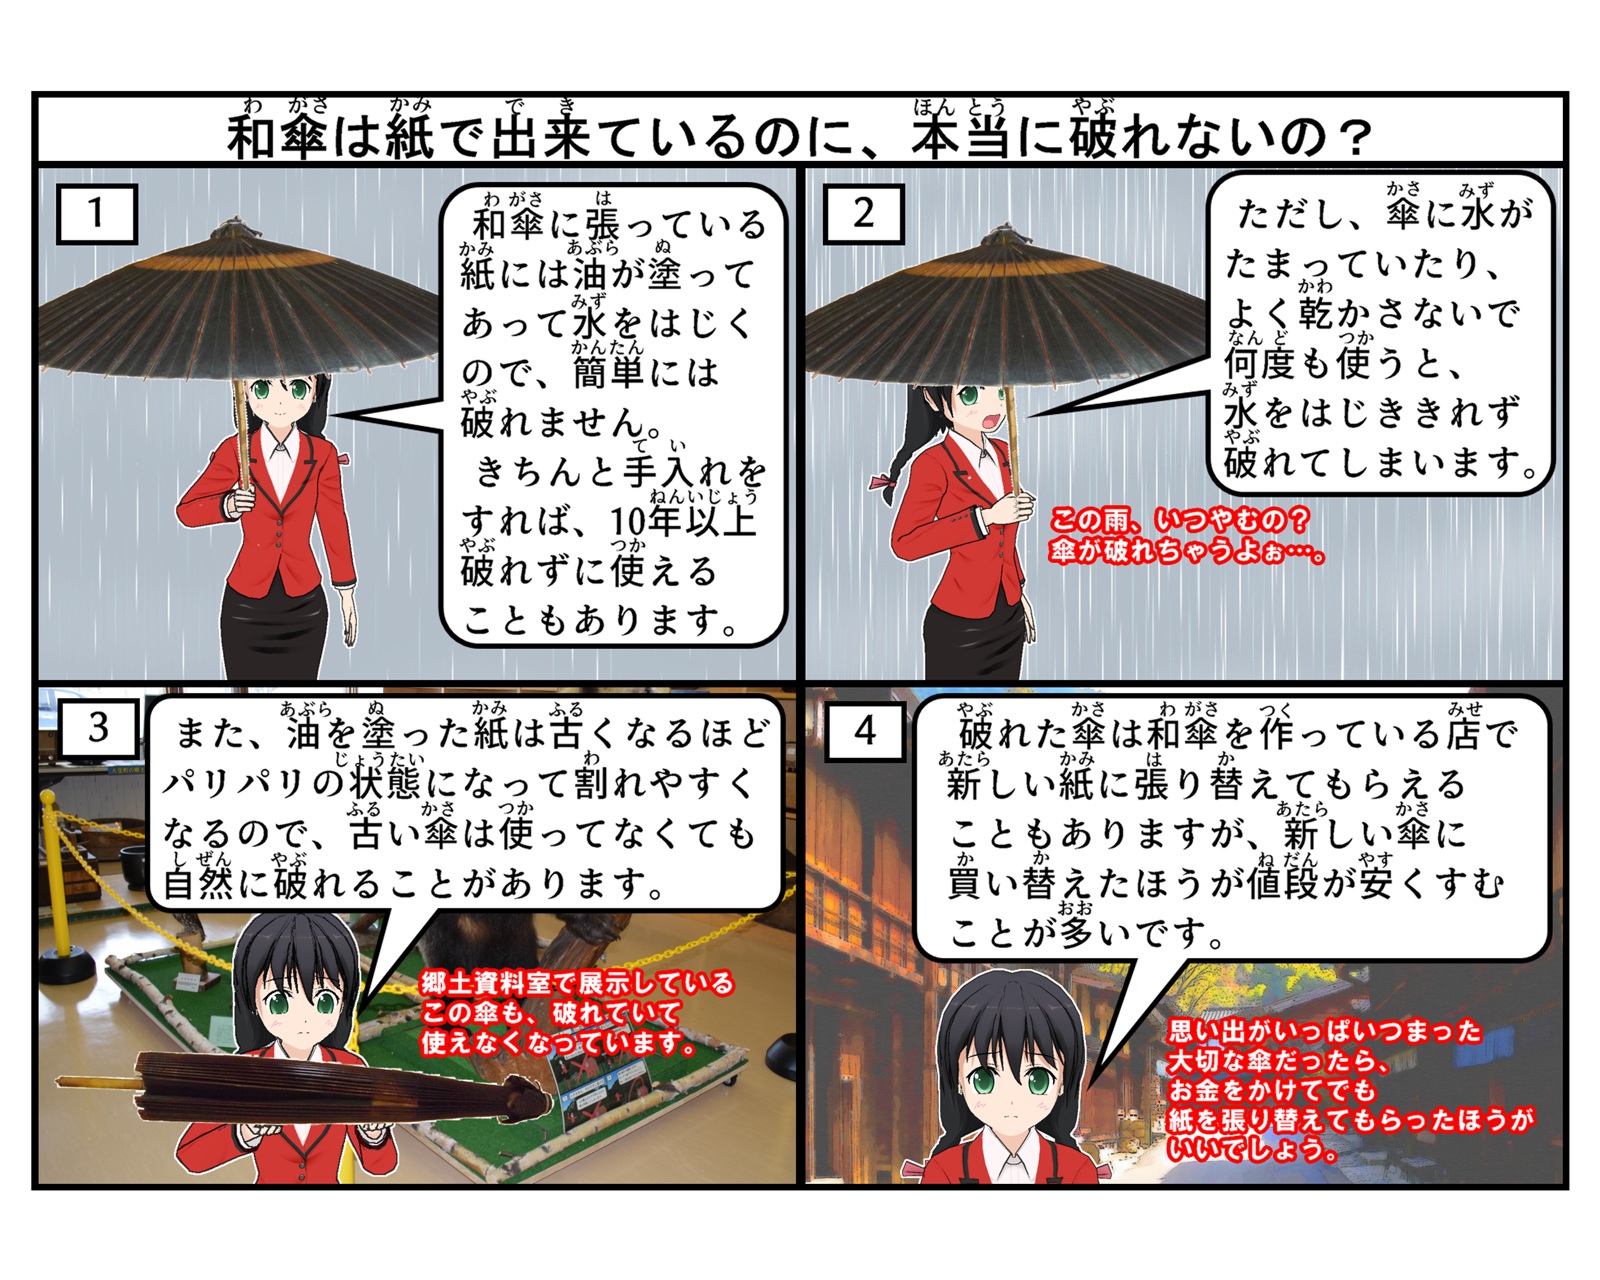 和傘は破れないのかについて説明している4コマイラスト